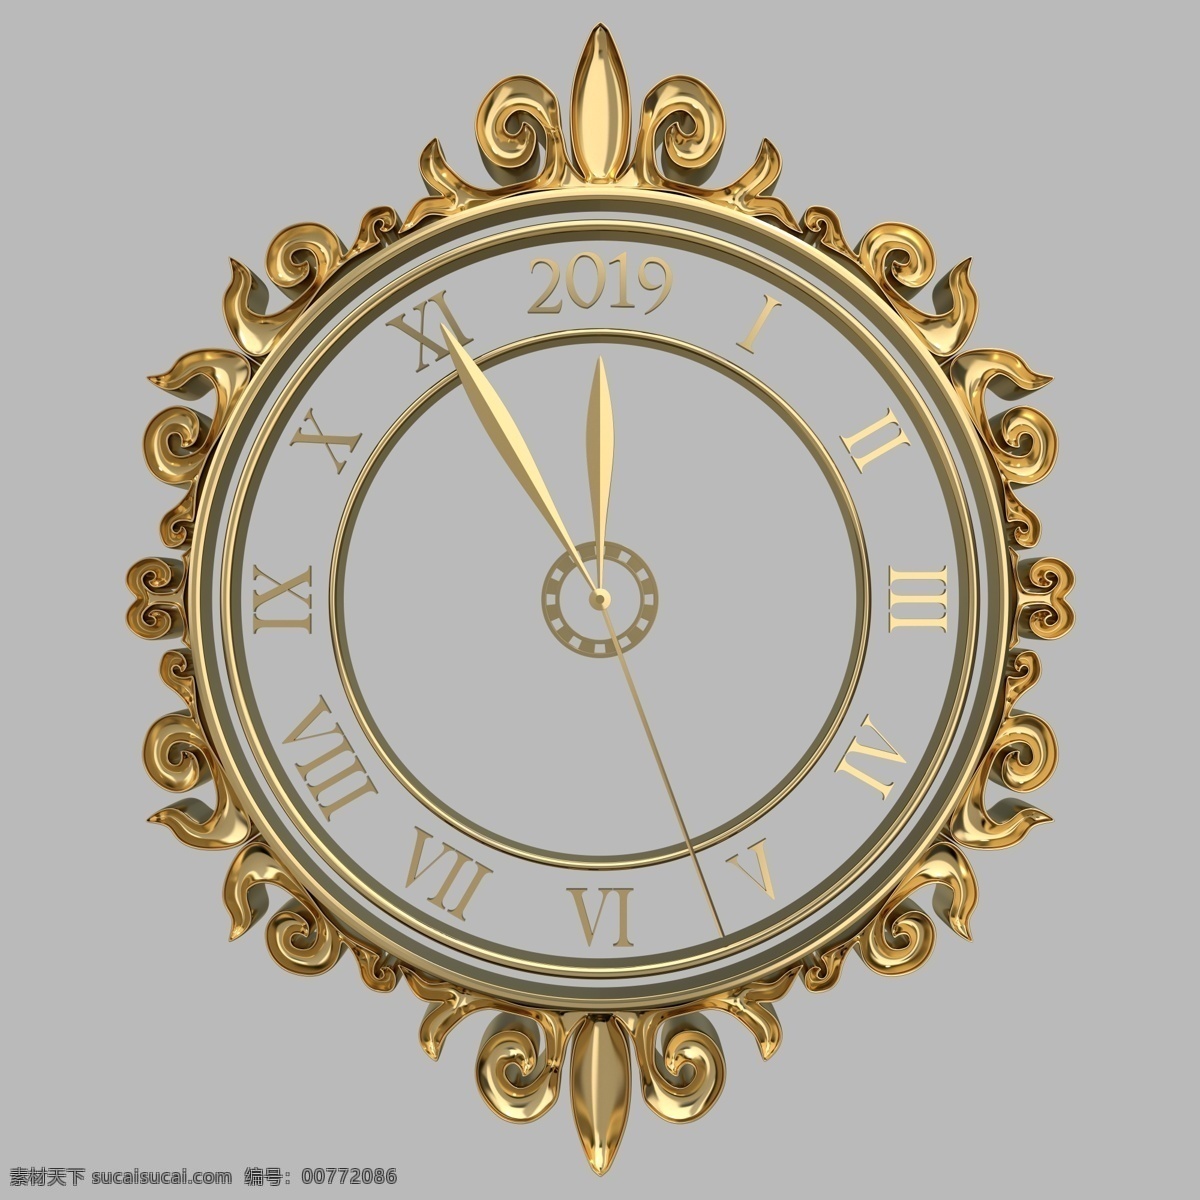 金色时钟 时钟正面 立体时钟 3d时钟 金色立体时钟 挂钟 高档时钟 欧式时钟 图标标签标志 生活百科 生活用品